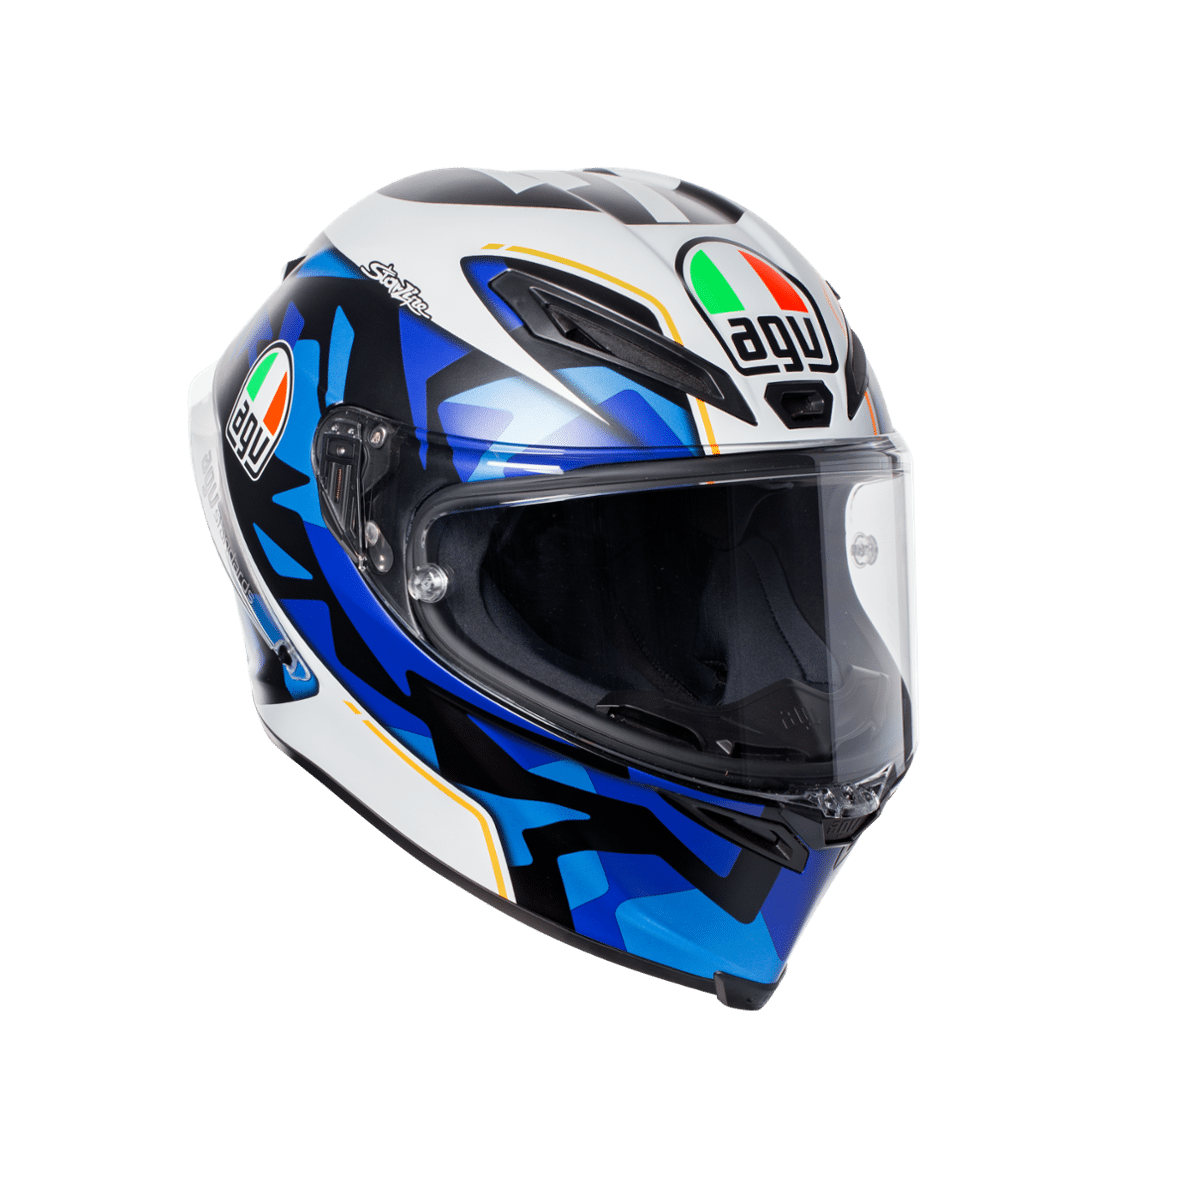 Kask AGV Corsa R Espargaro 2017